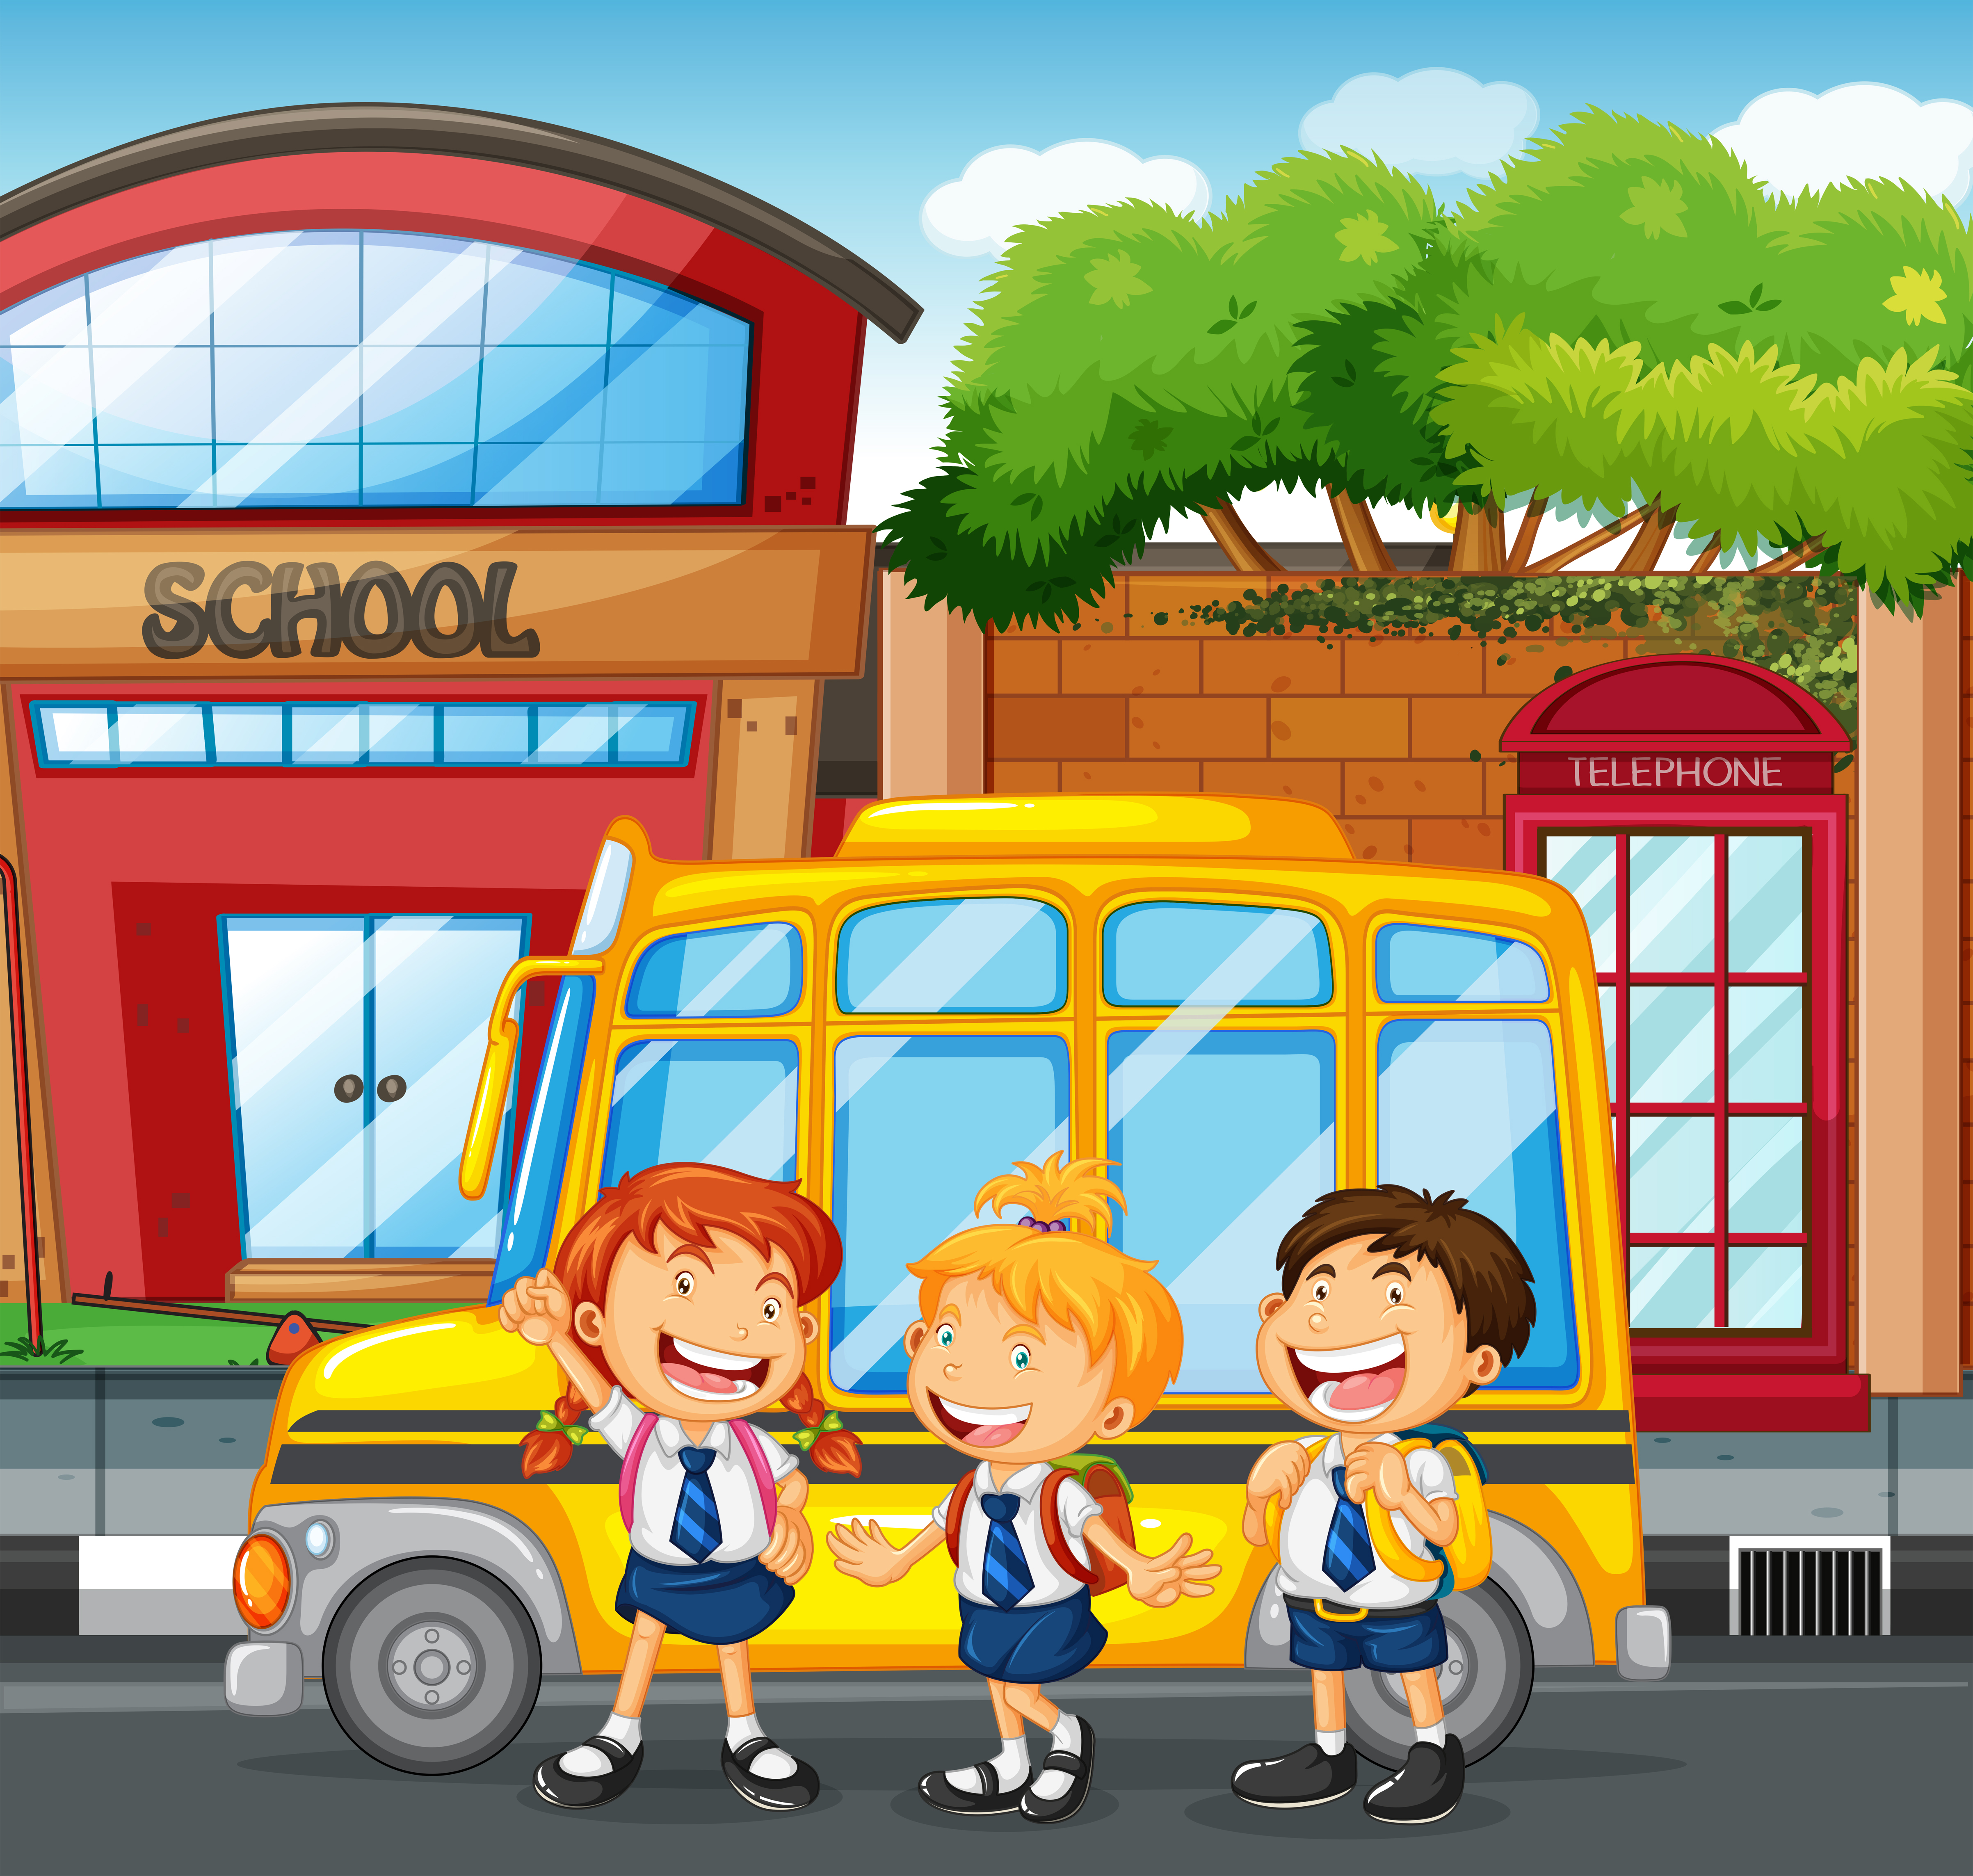 Школьник едет в автобусе. School Bus illustration. The School Bus arrived at the School.